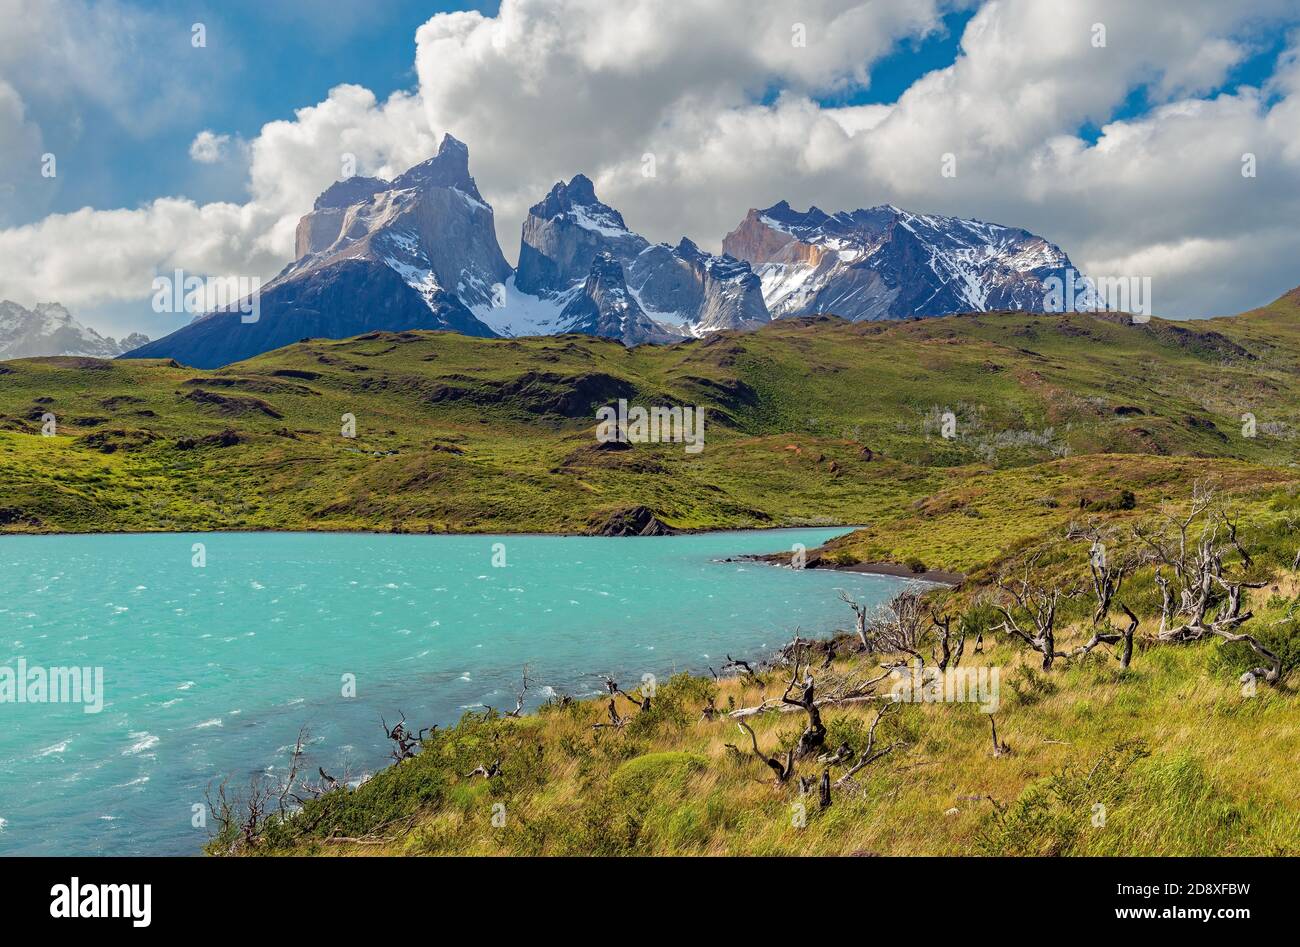 Los majestuosos picos montañosos Torres del Paine Andes por el Lago Pehoe, Parque Nacional Torres del Paine, Patagonia, Chile. Foto de stock